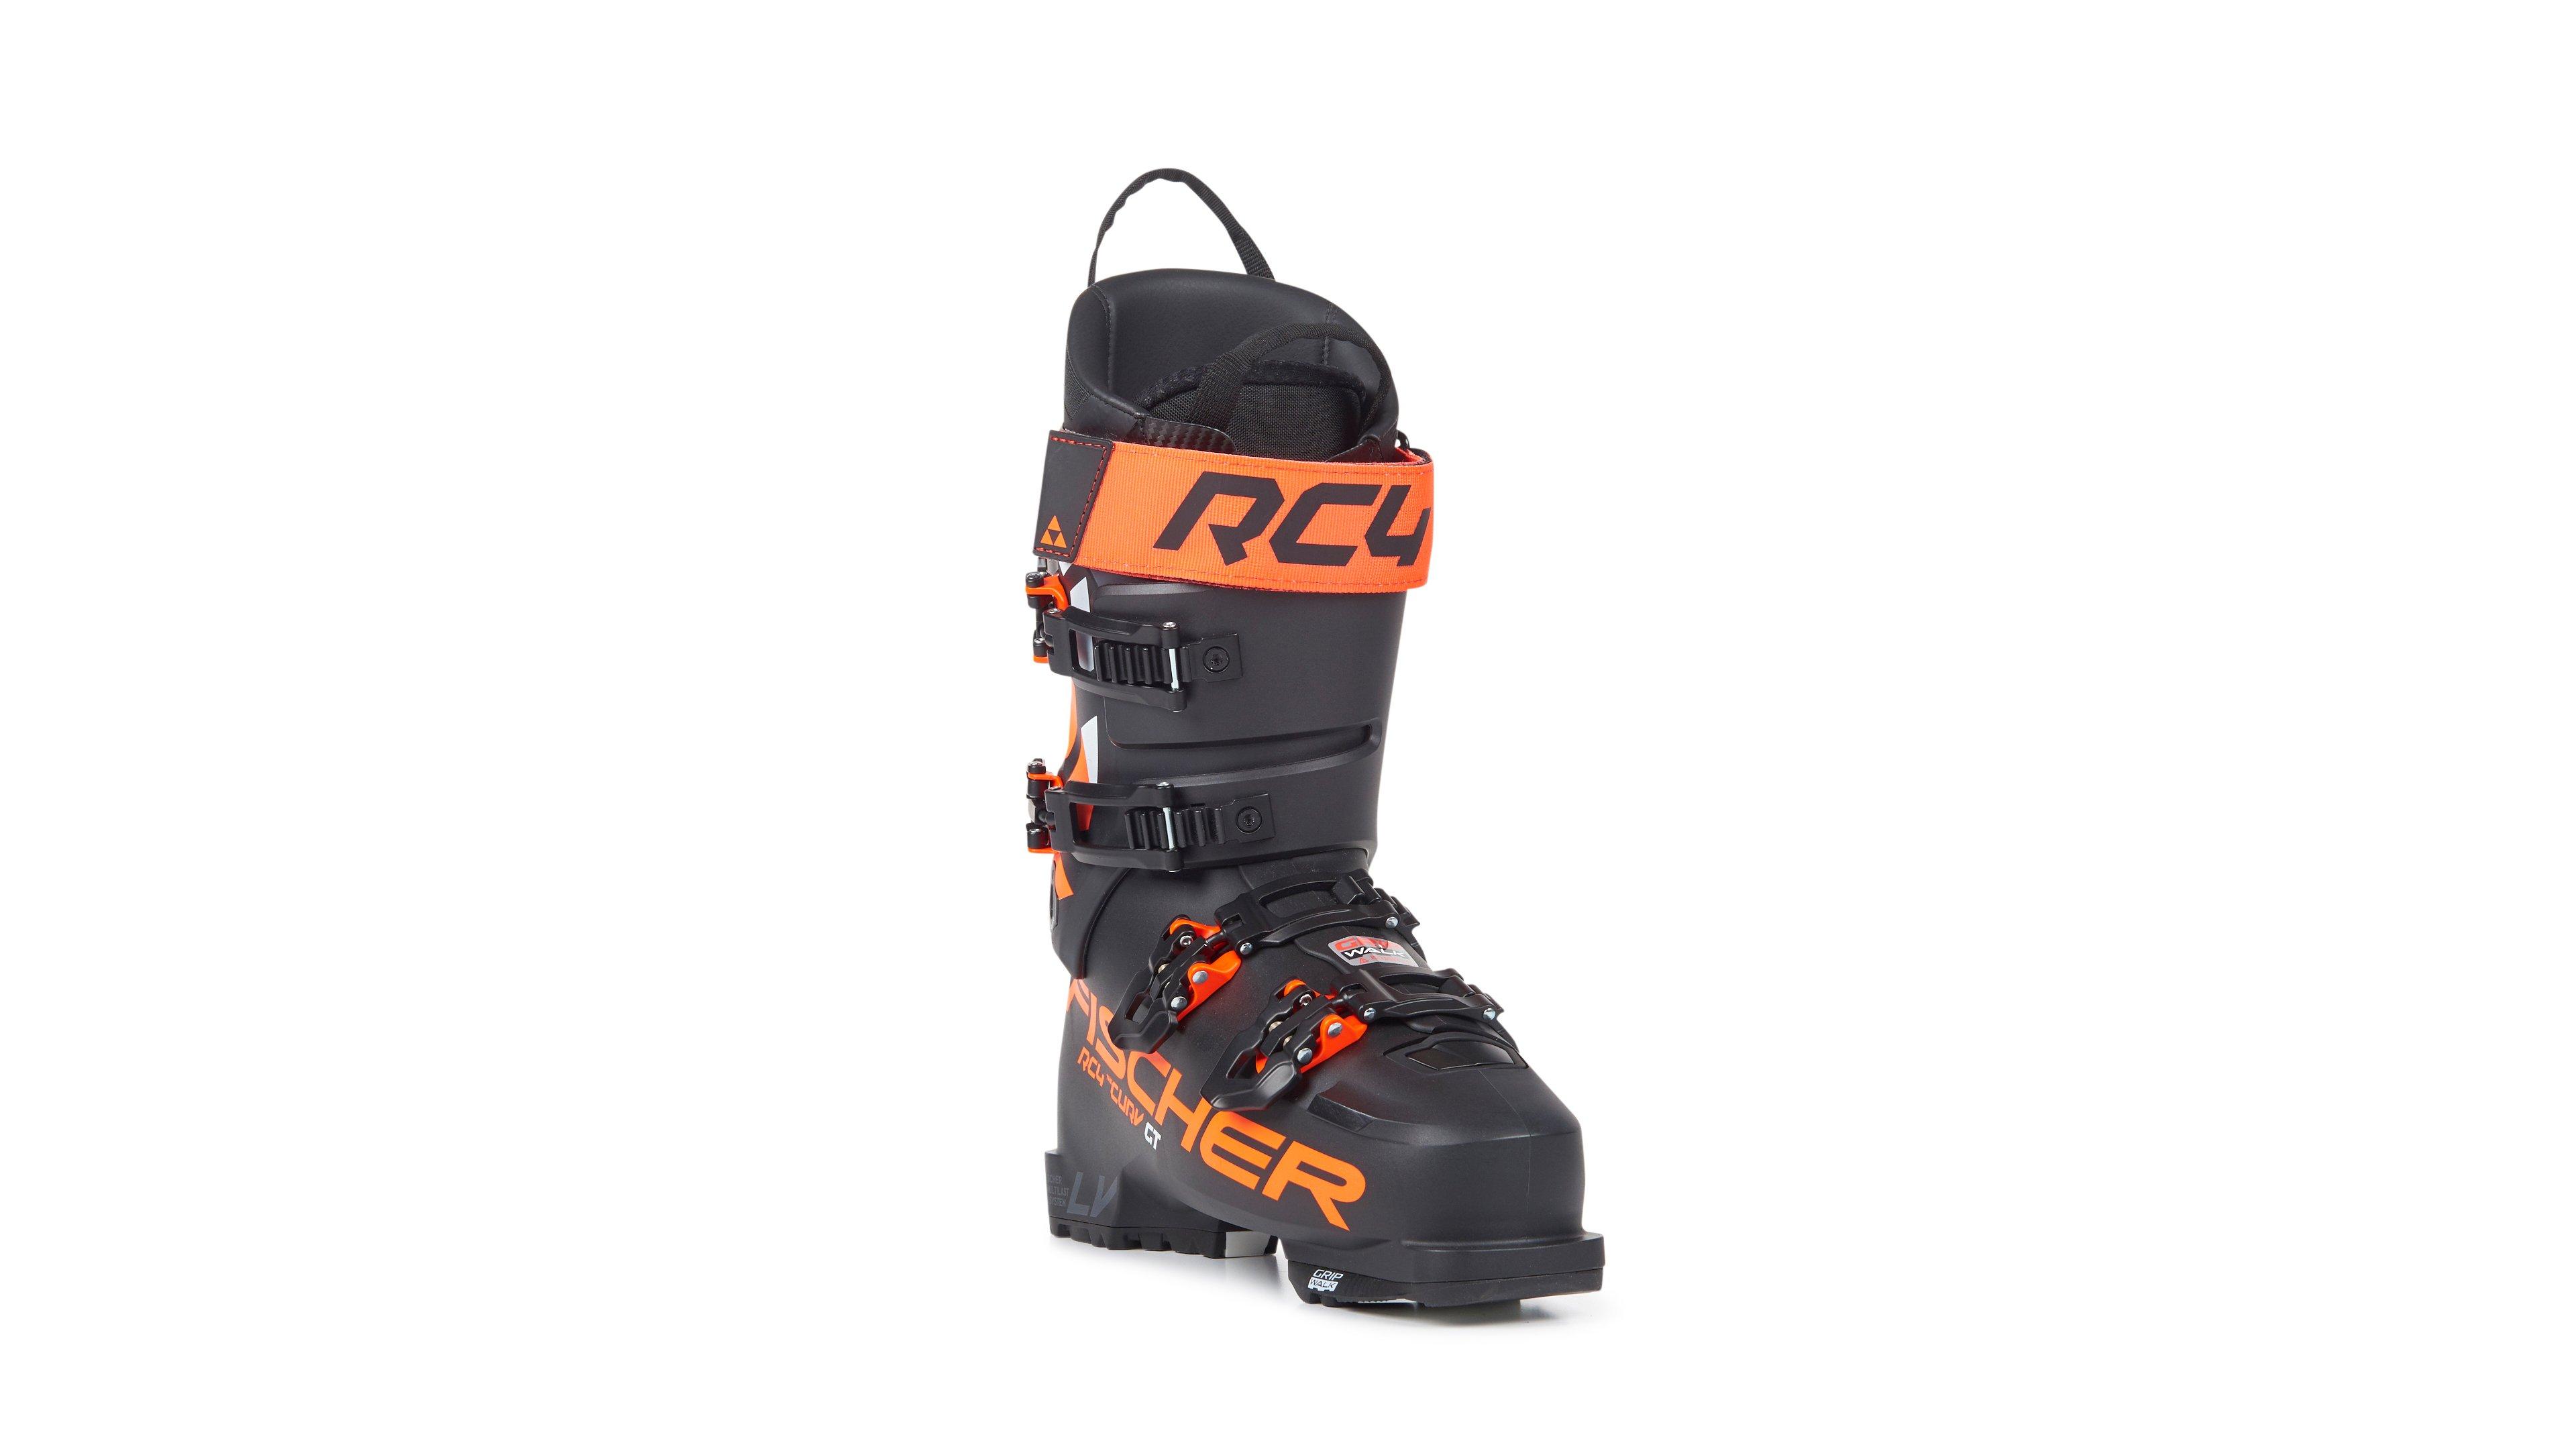 Fischer - Men's RC4 The Curv GT 120 Vacuum Walk - Black / Orange